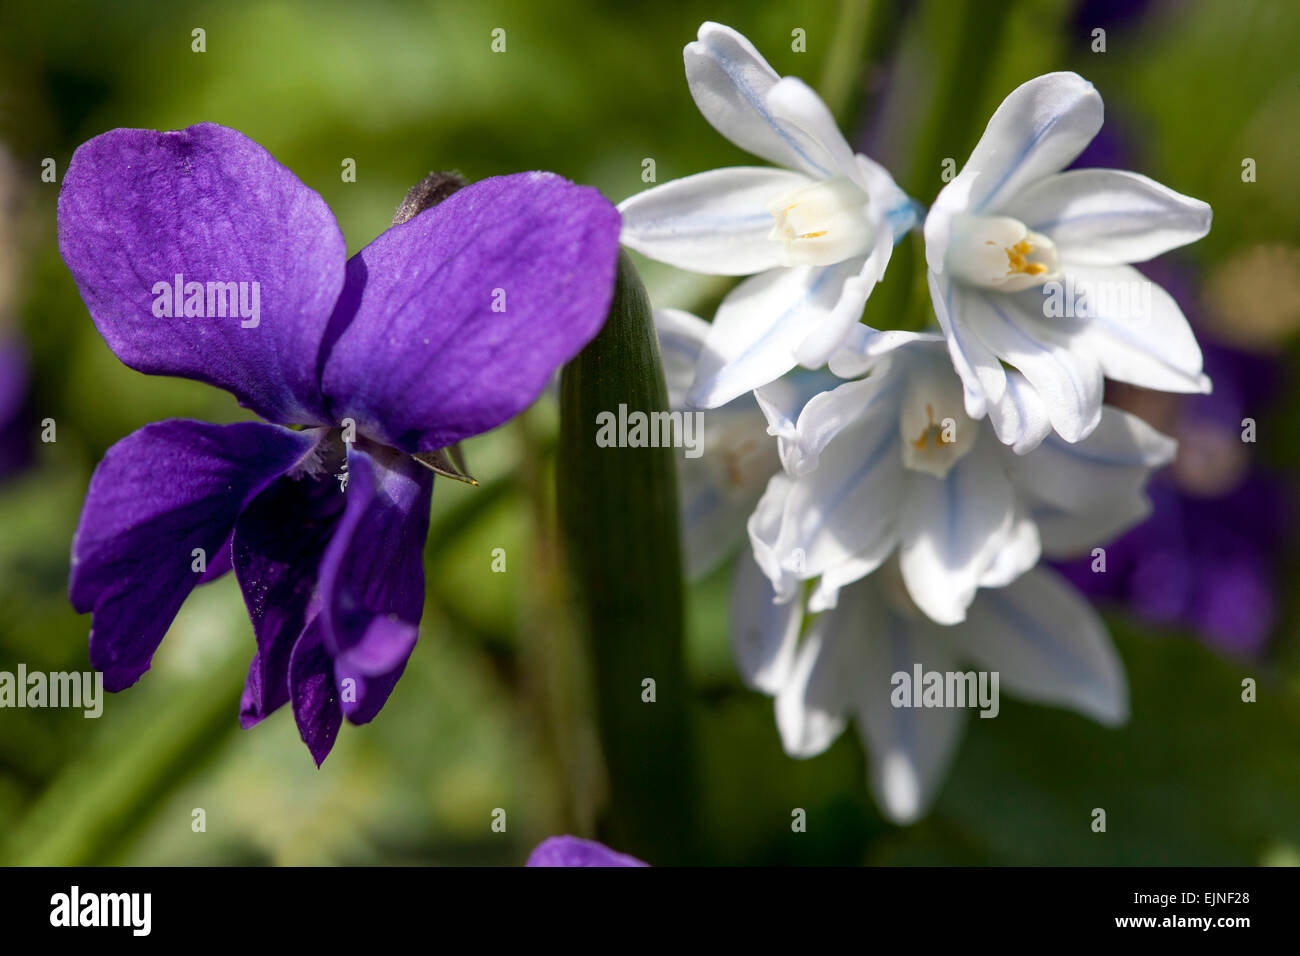 Sweet violet flowers Viola odorata Scilla mischtschenkoana Stock Photo